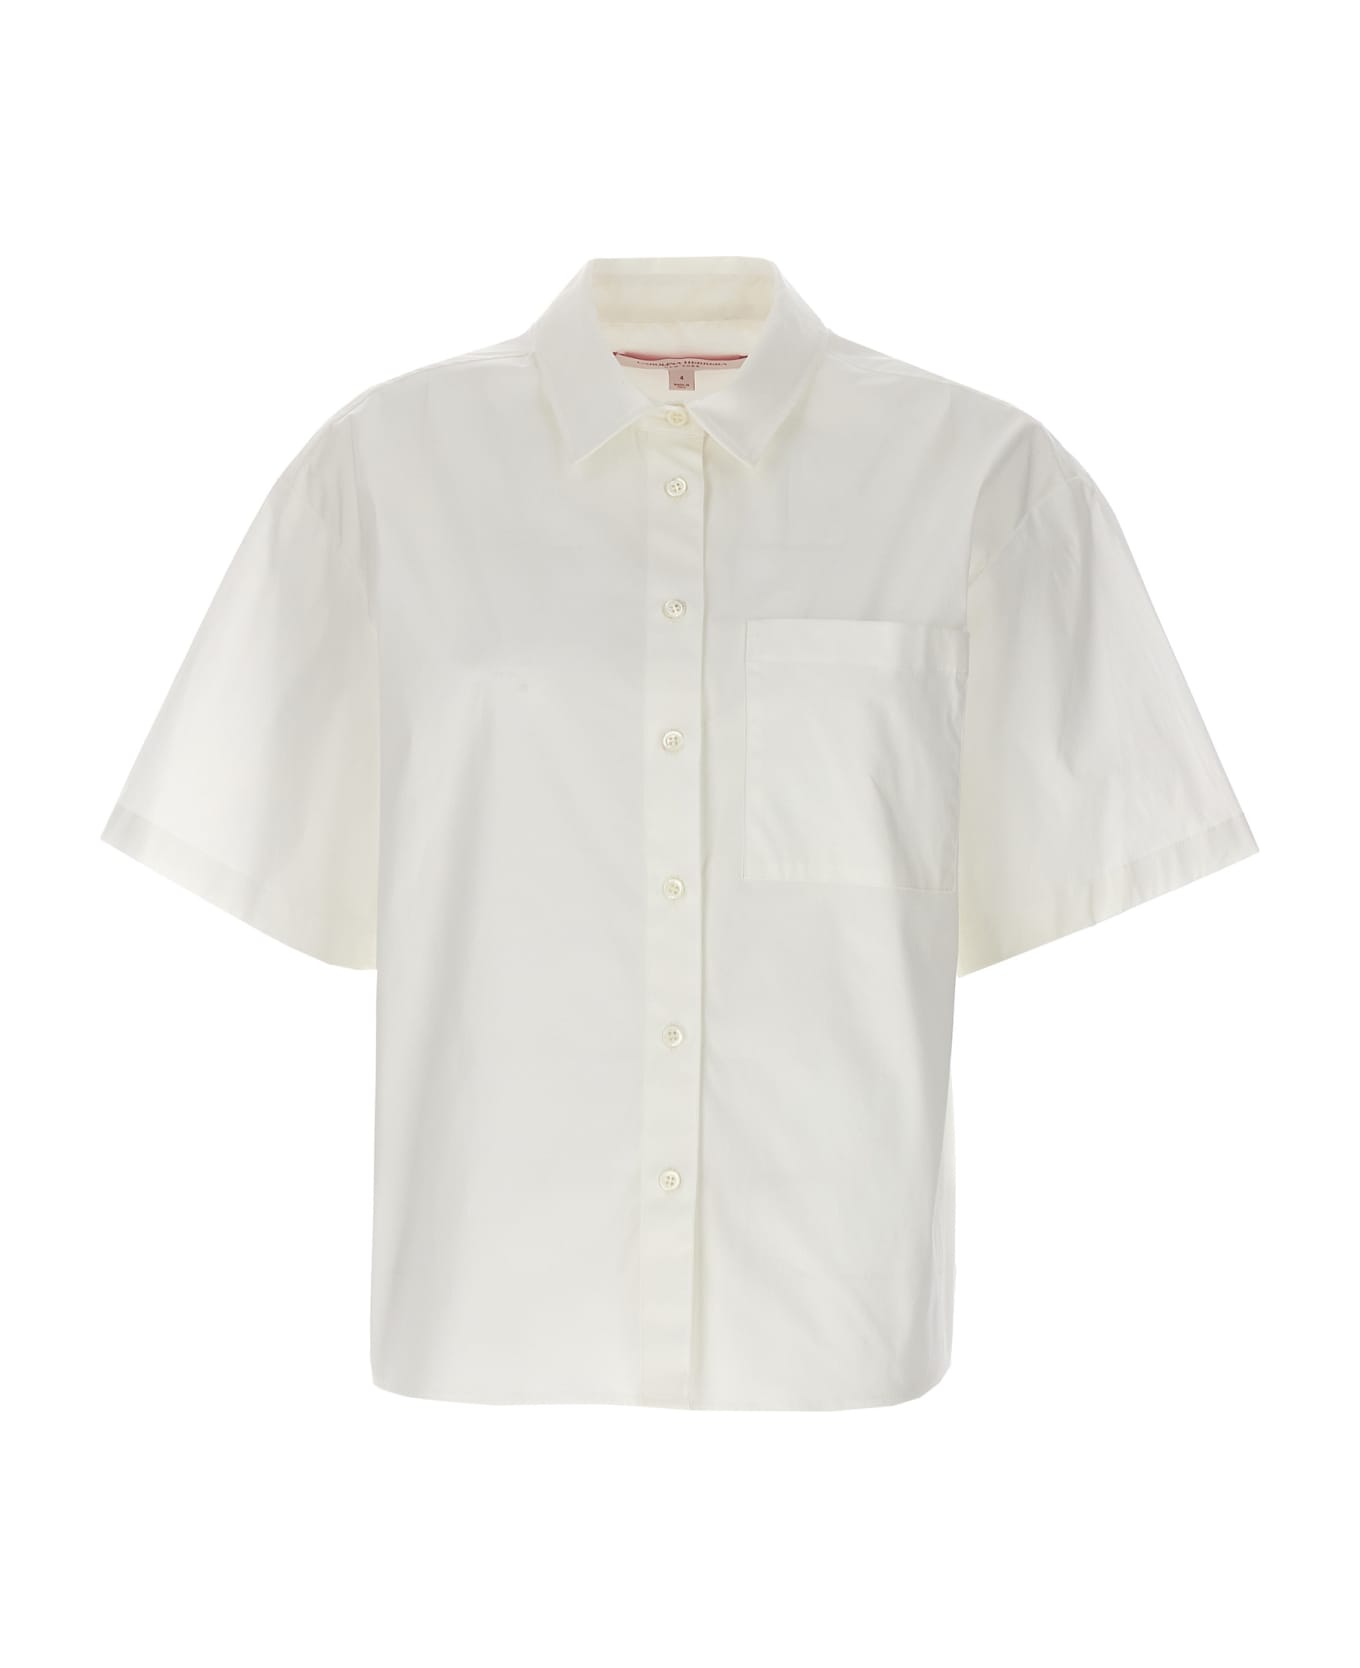 Carolina Herrera Short Sleeve Shirt - White シャツ